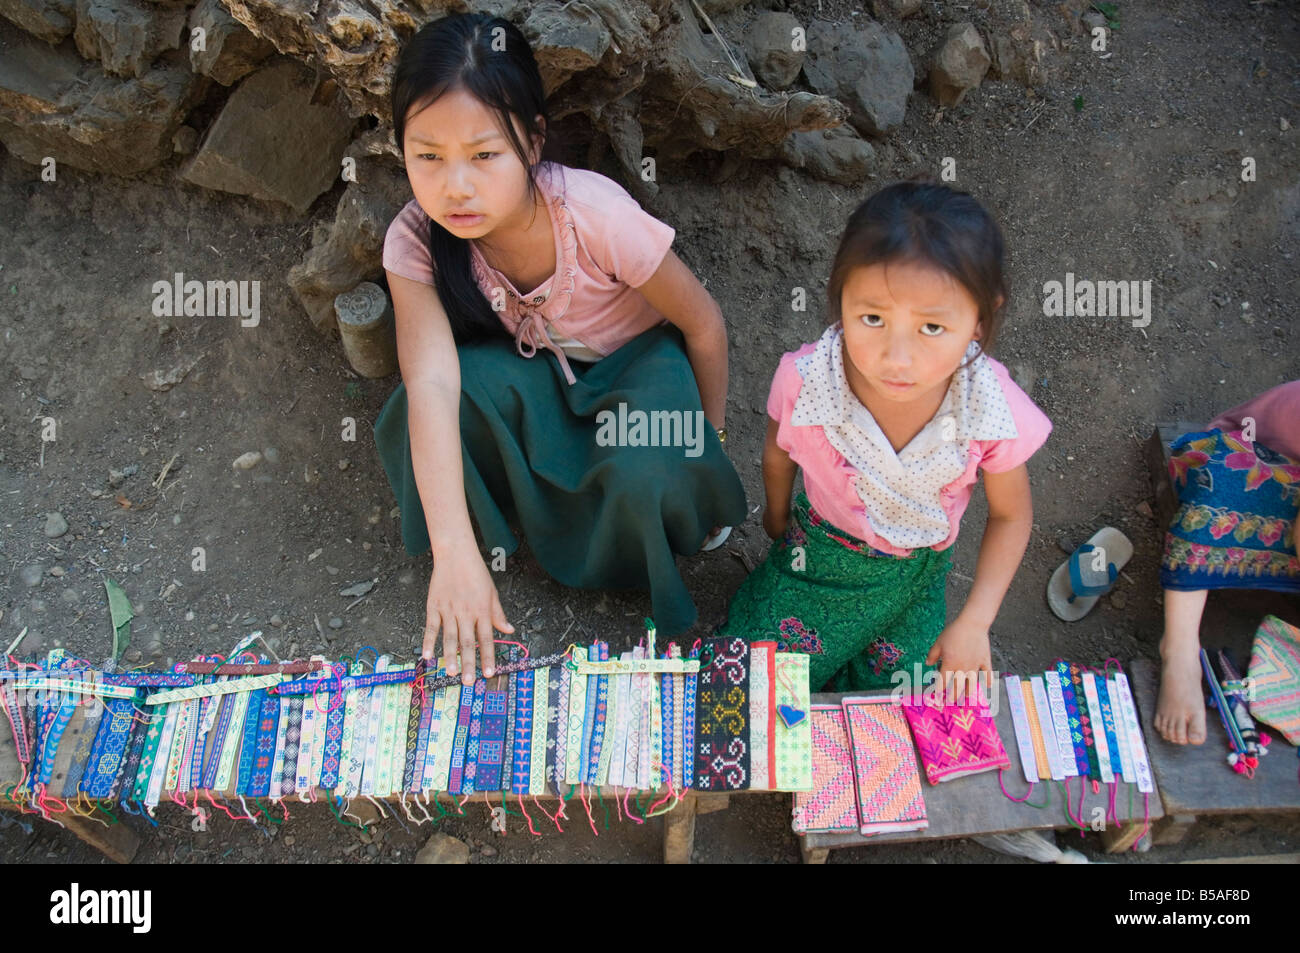 Aldea tribal Hmong niñas que venden artesanías, Luang Prabang, Laos, Indochina, en el sudeste de Asia Foto de stock